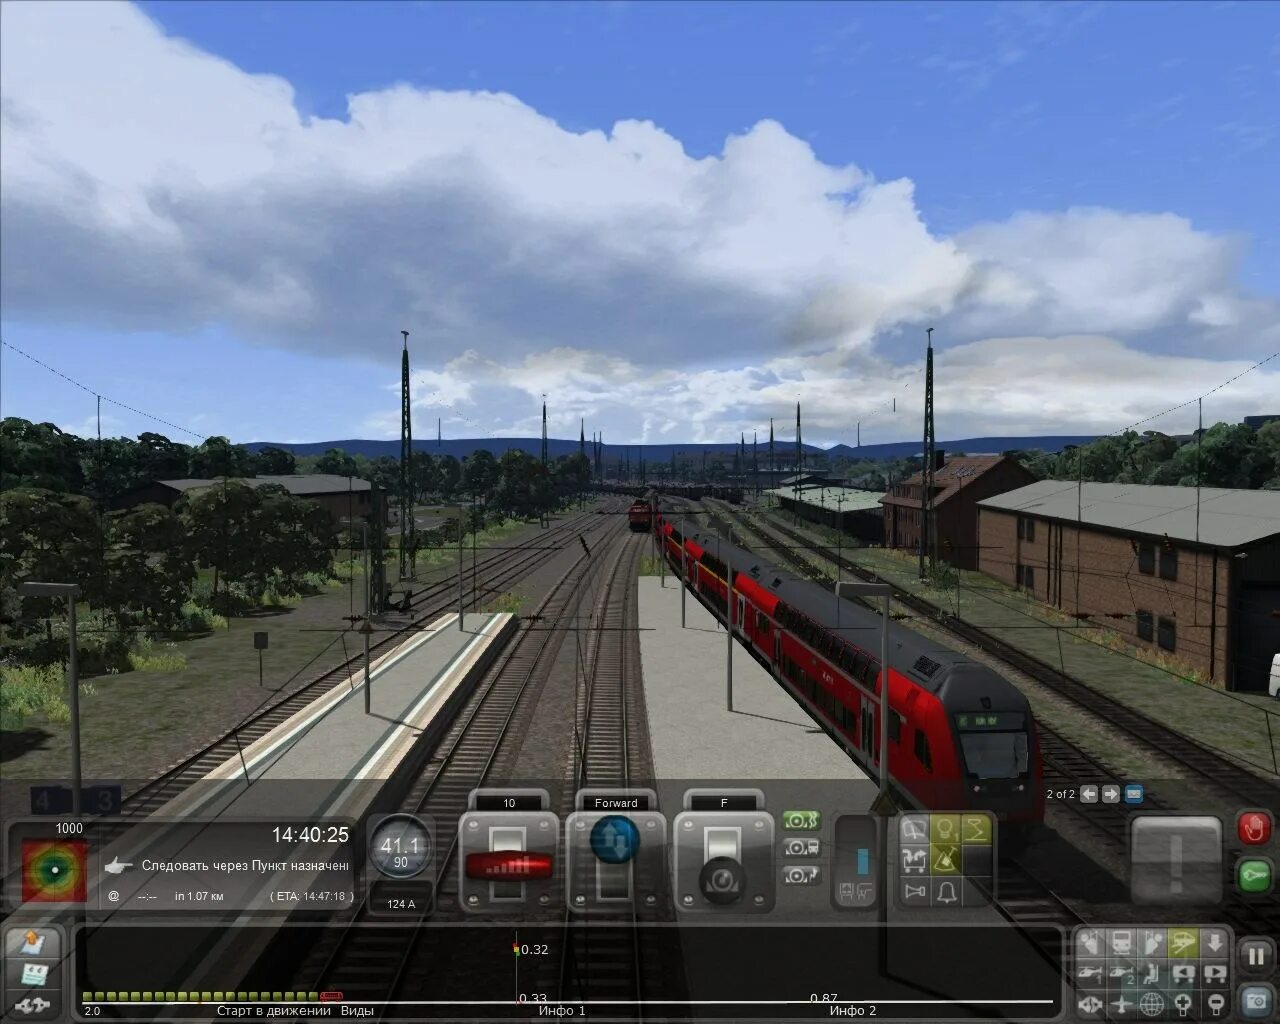 Симулятор поезда Train Simulator. Симулятор поезда РЖД 2. Траин симулятор 2016. Train Simulator 2016: Steam Edition.